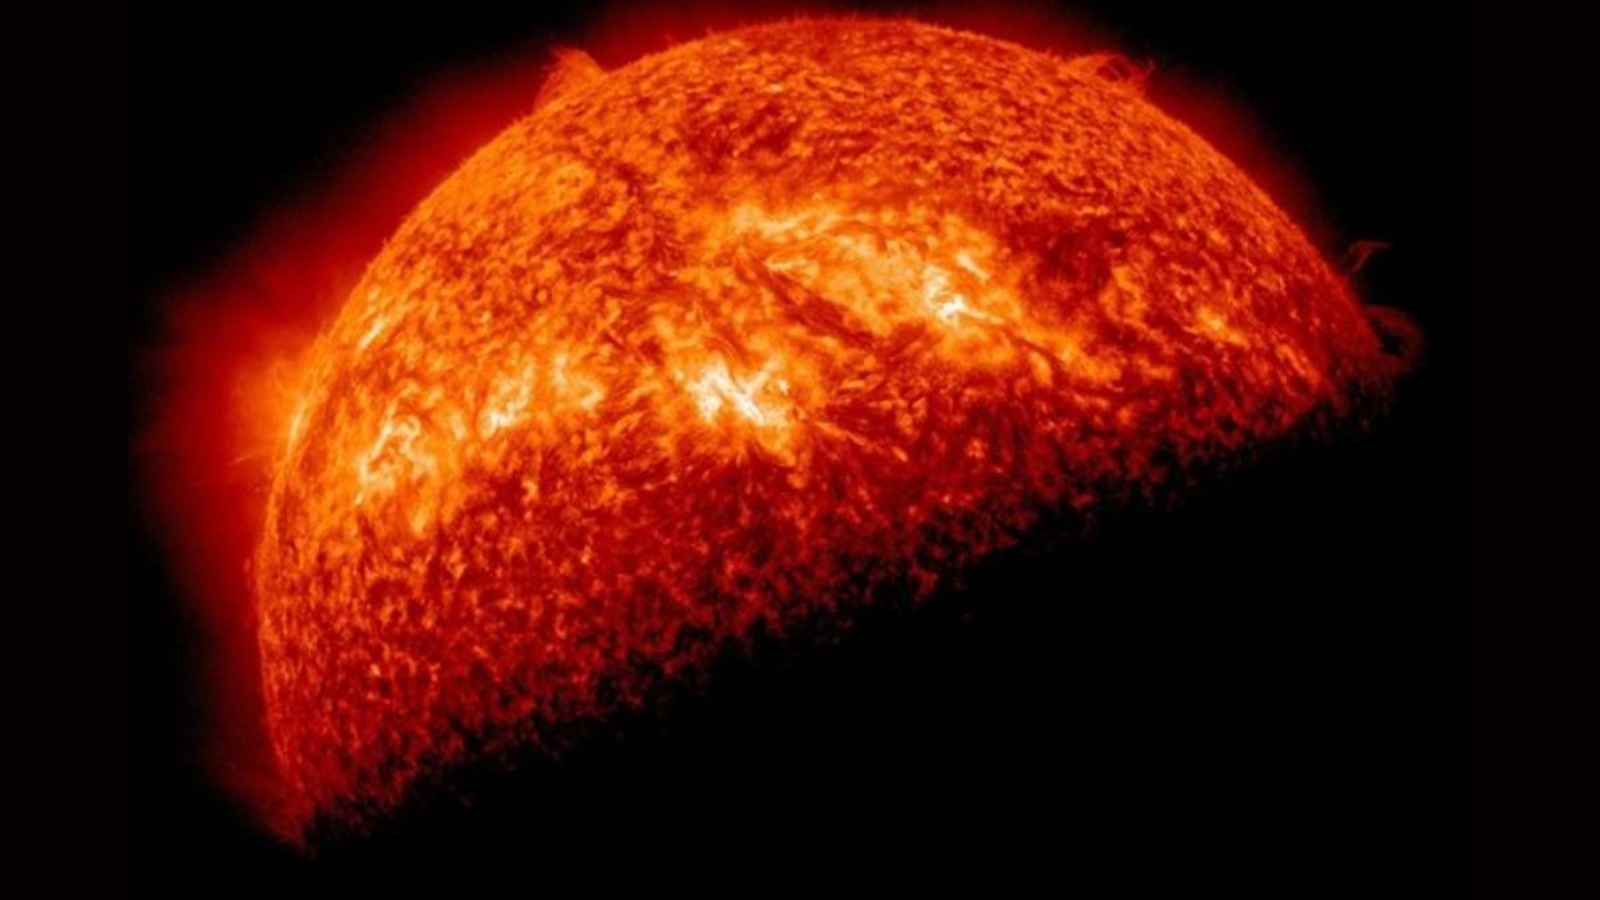 La NASA célèbre le Nouvel An en publiant une photo époustouflante du soleil crachant une éruption solaire